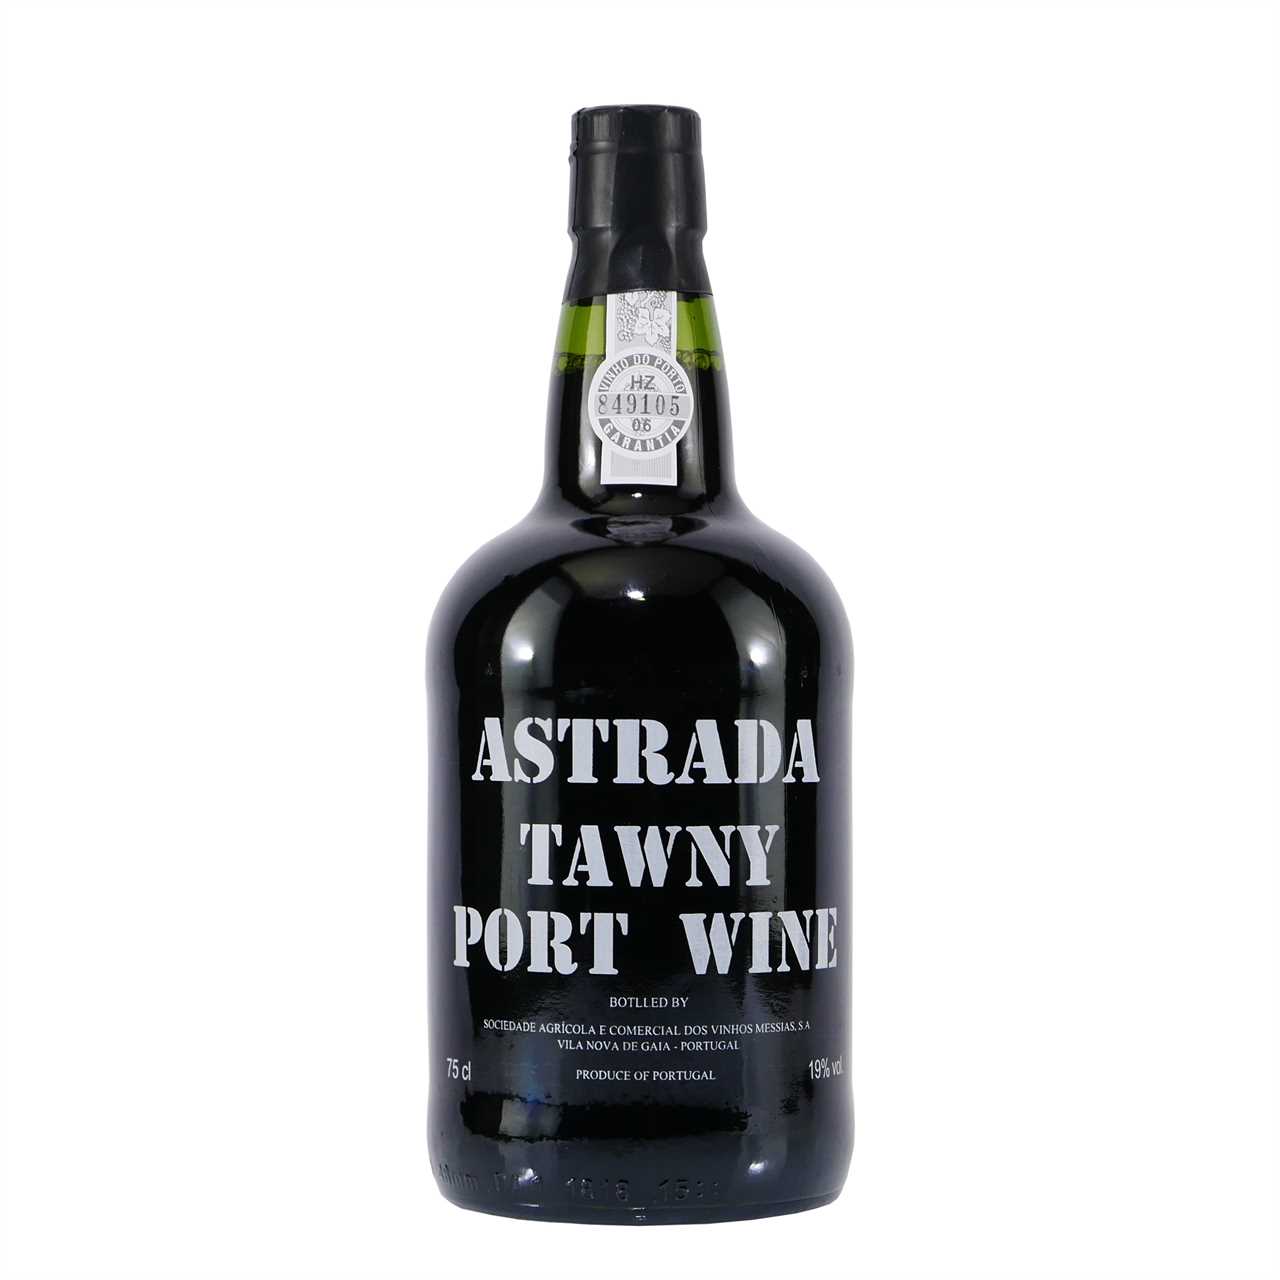 Astrada Tawny Portwein (6 x 0,75L)